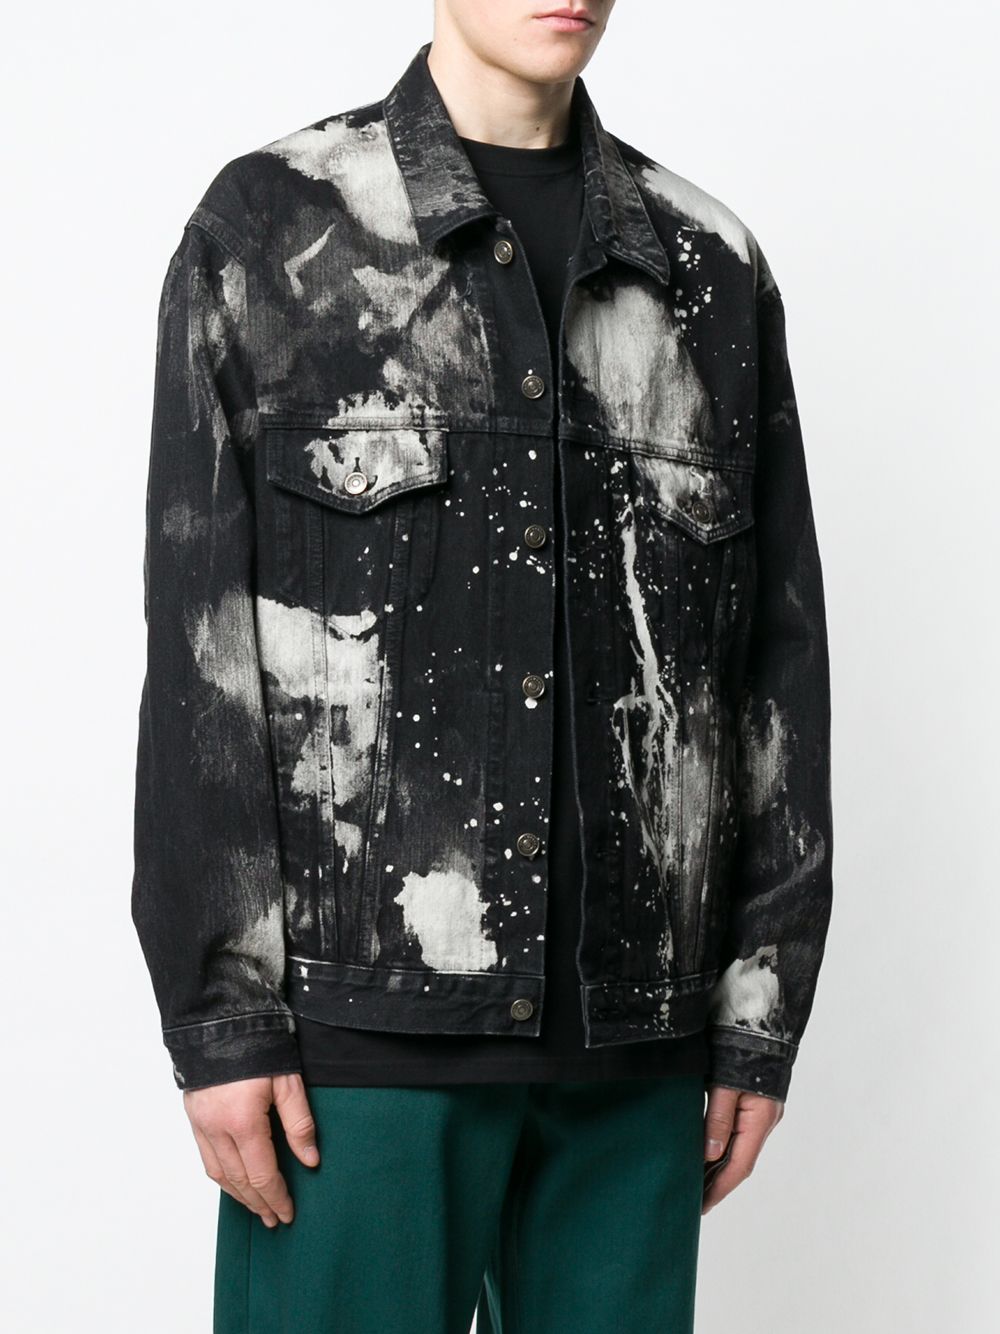 фото Balenciaga джинсовая куртка с эффектом разбрызганной краски